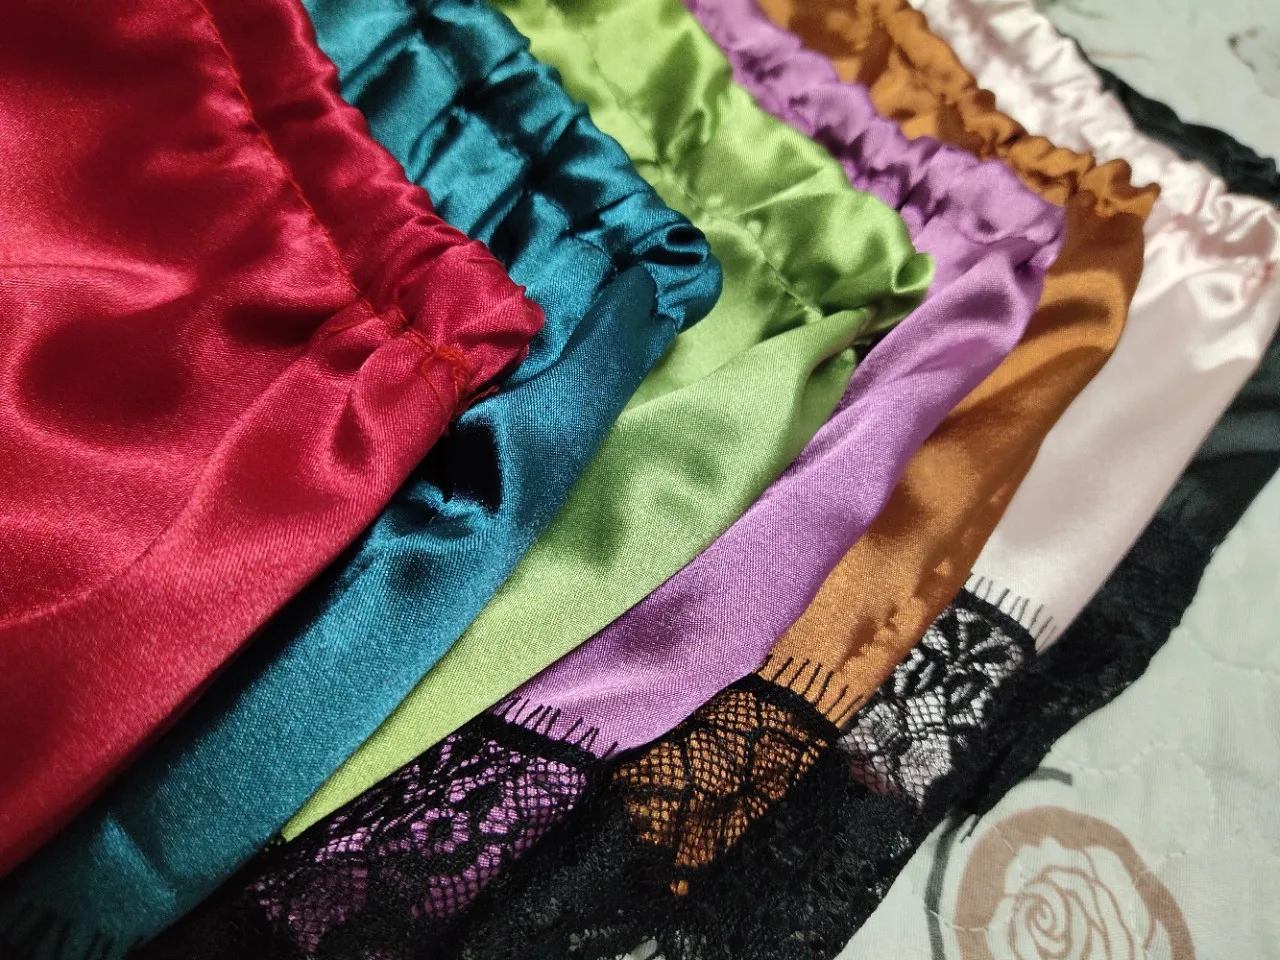 Lace Silk Sleepwear for Women Pajamas Set Sexy Lingerie Crop Tops Shorts Babydoll Nightwear S/M/L/XL/2XL/3XL 4XL 5XL